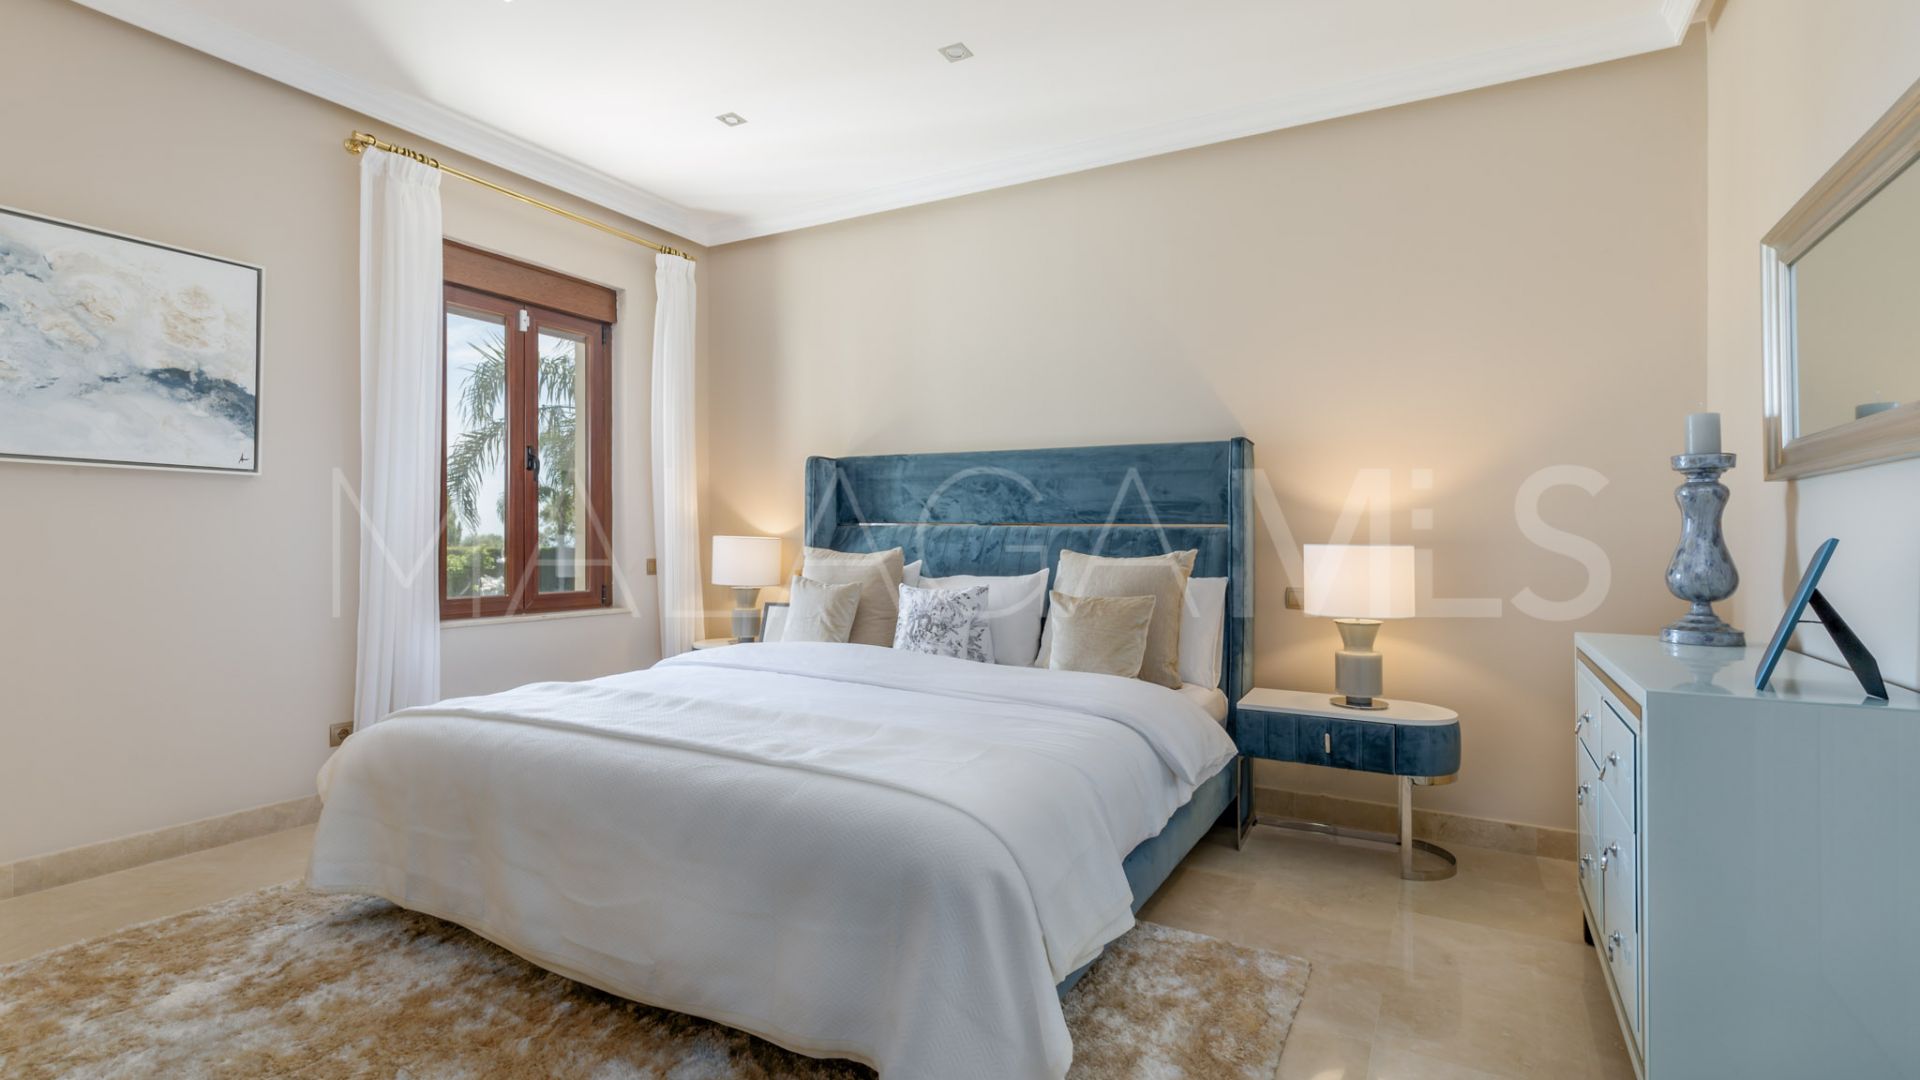 11 bedrooms villa in Paraiso Alto for sale